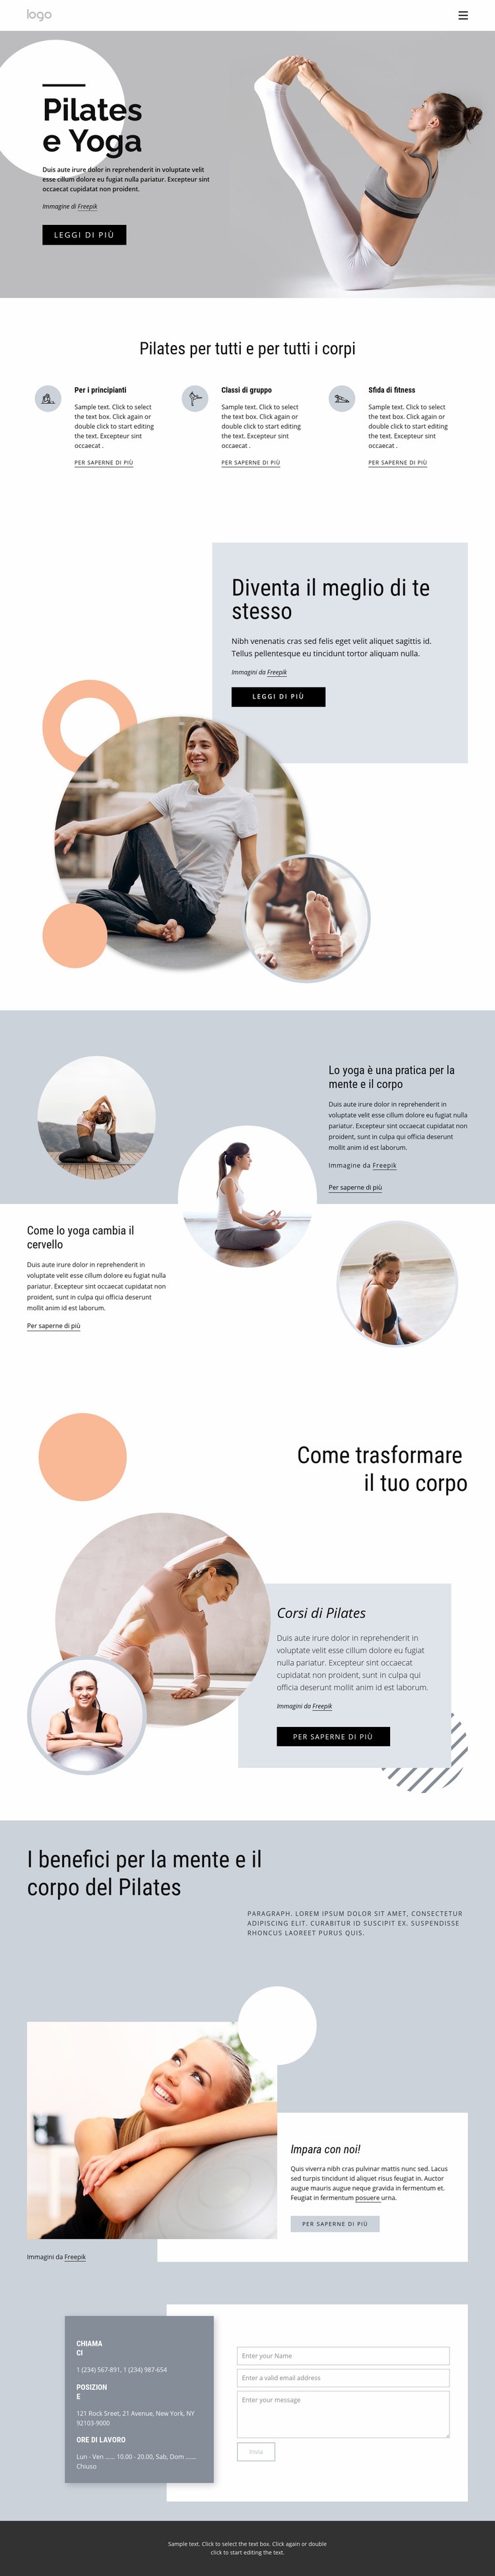 Centro pilates e yoga Progettazione di siti web